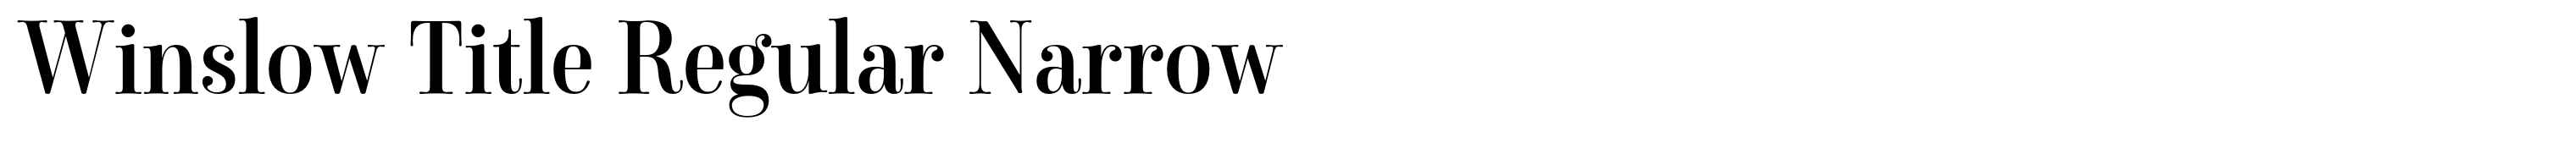 Winslow Title Regular Narrow